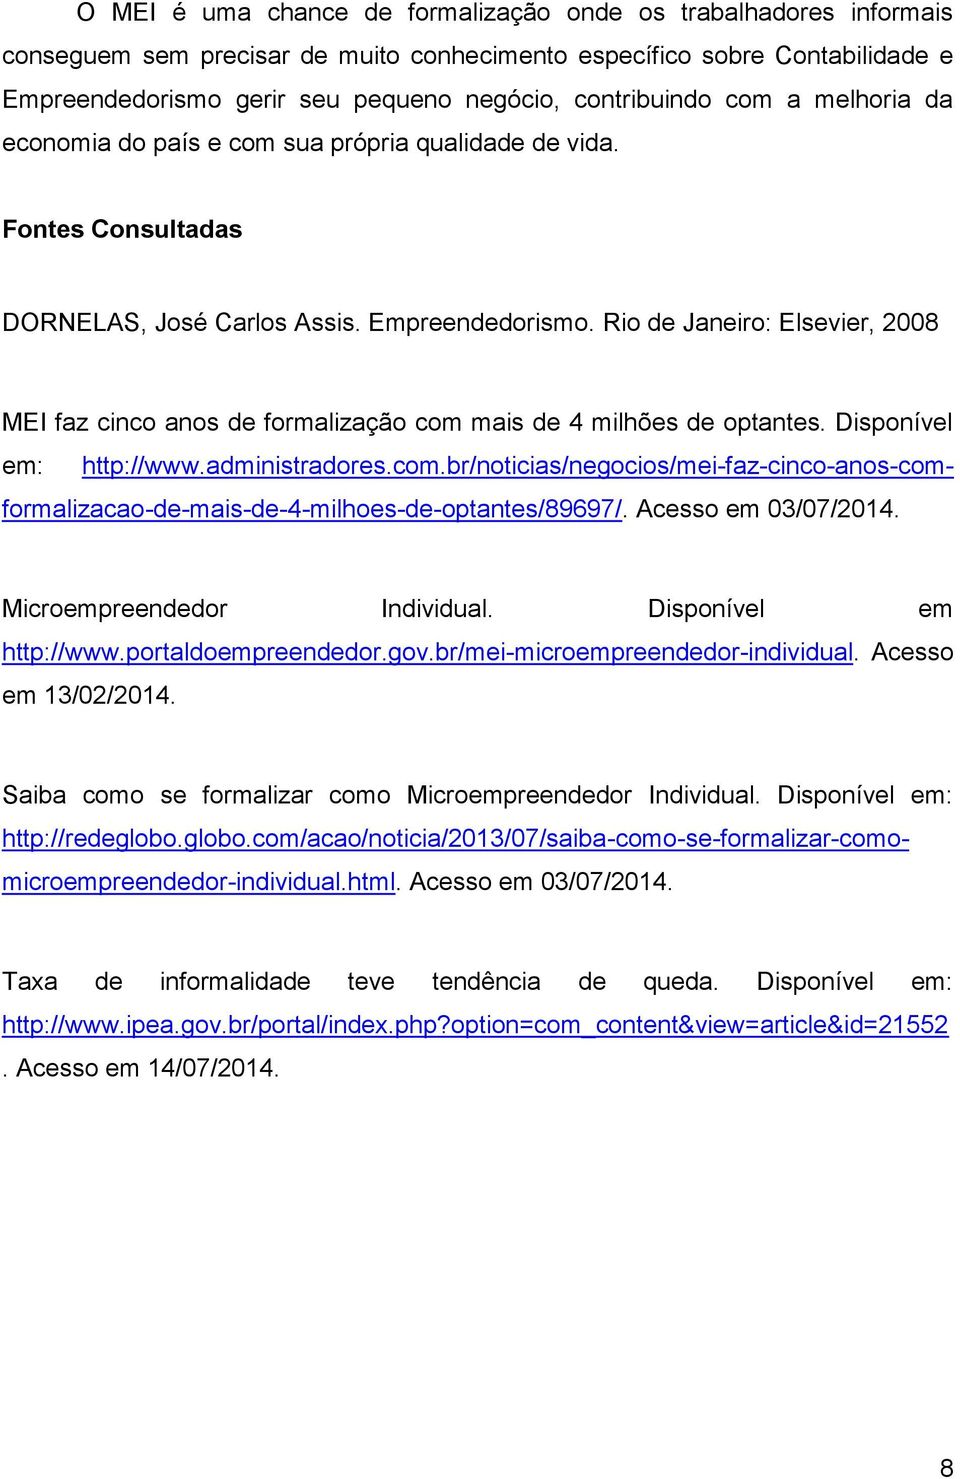 Rio de Janeiro: Elsevier, 2008 MEI faz cinco anos de formalização com mais de 4 milhões de optantes. Disponível em: http://www.administradores.com.br/noticias/negocios/mei-faz-cinco-anos-comformalizacao-de-mais-de-4-milhoes-de-optantes/89697/.